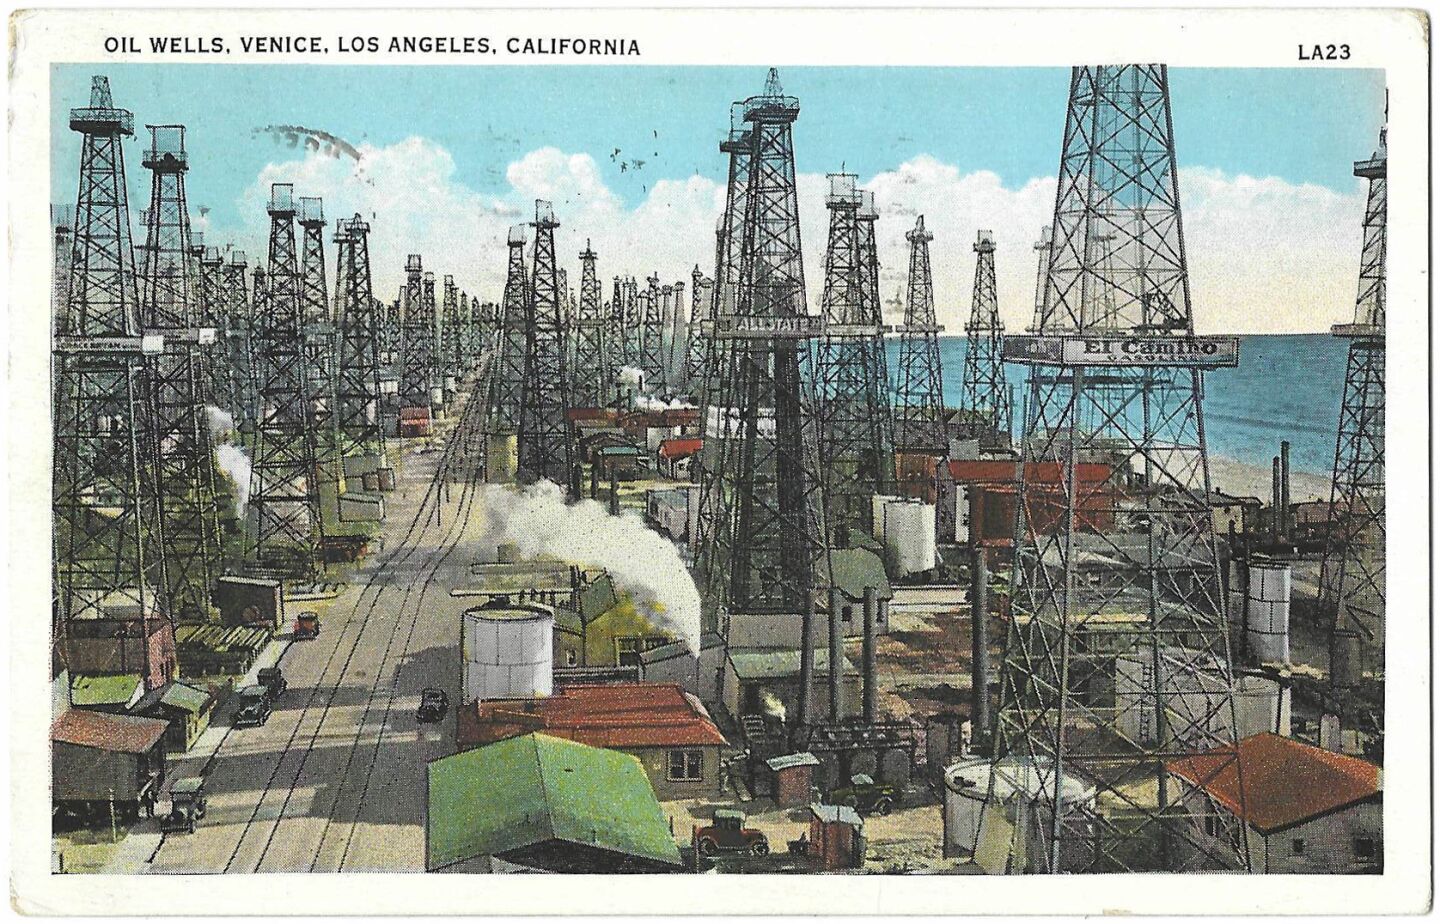 oilwells_venice_postcard-front-crop.jpg